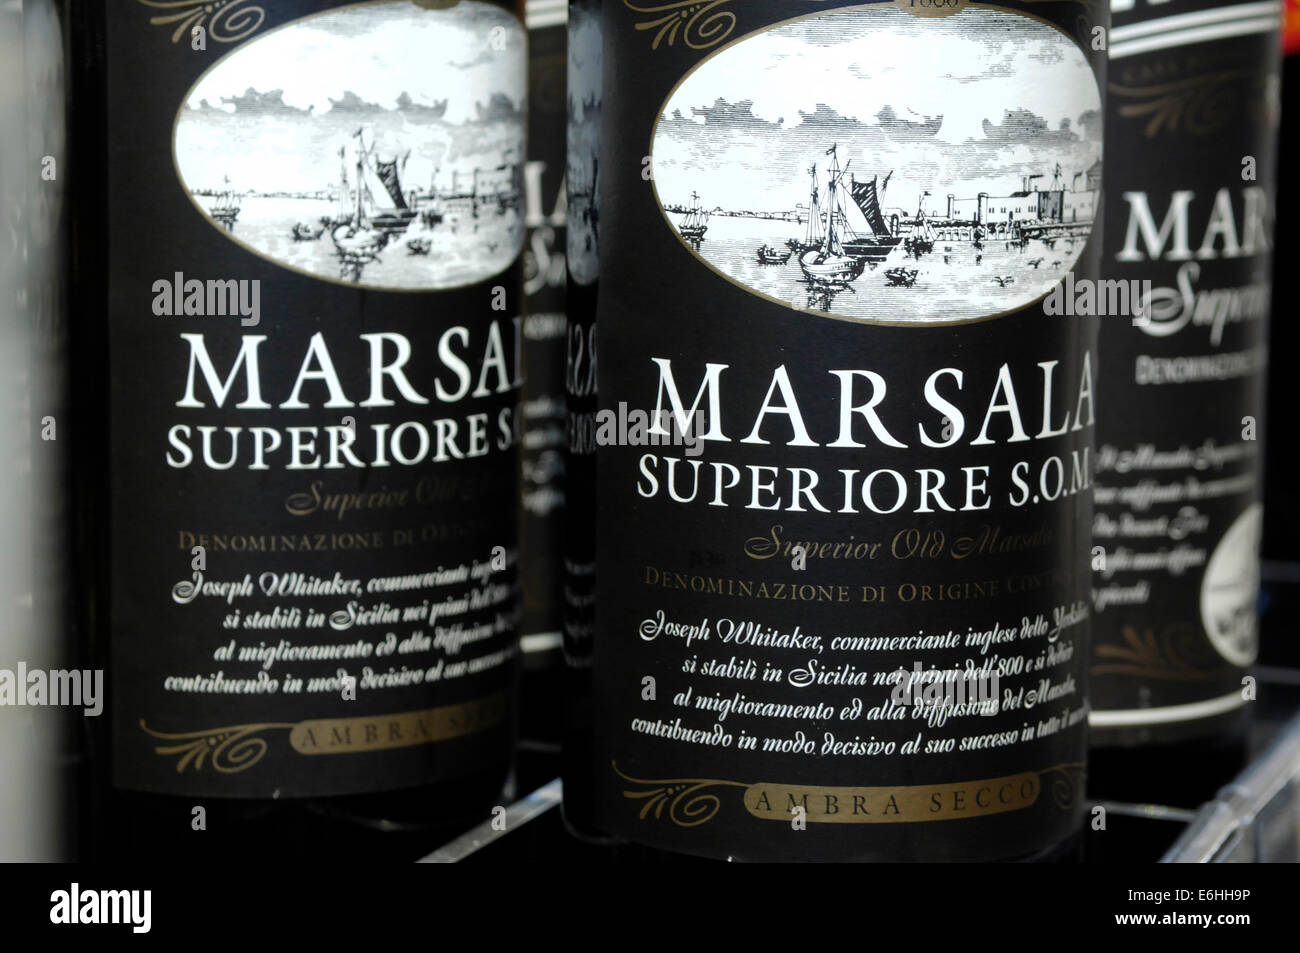 Eine Flaschen Marsala Superiore Weine, Florio Weingut, Marsala, Sizilien Stockfoto